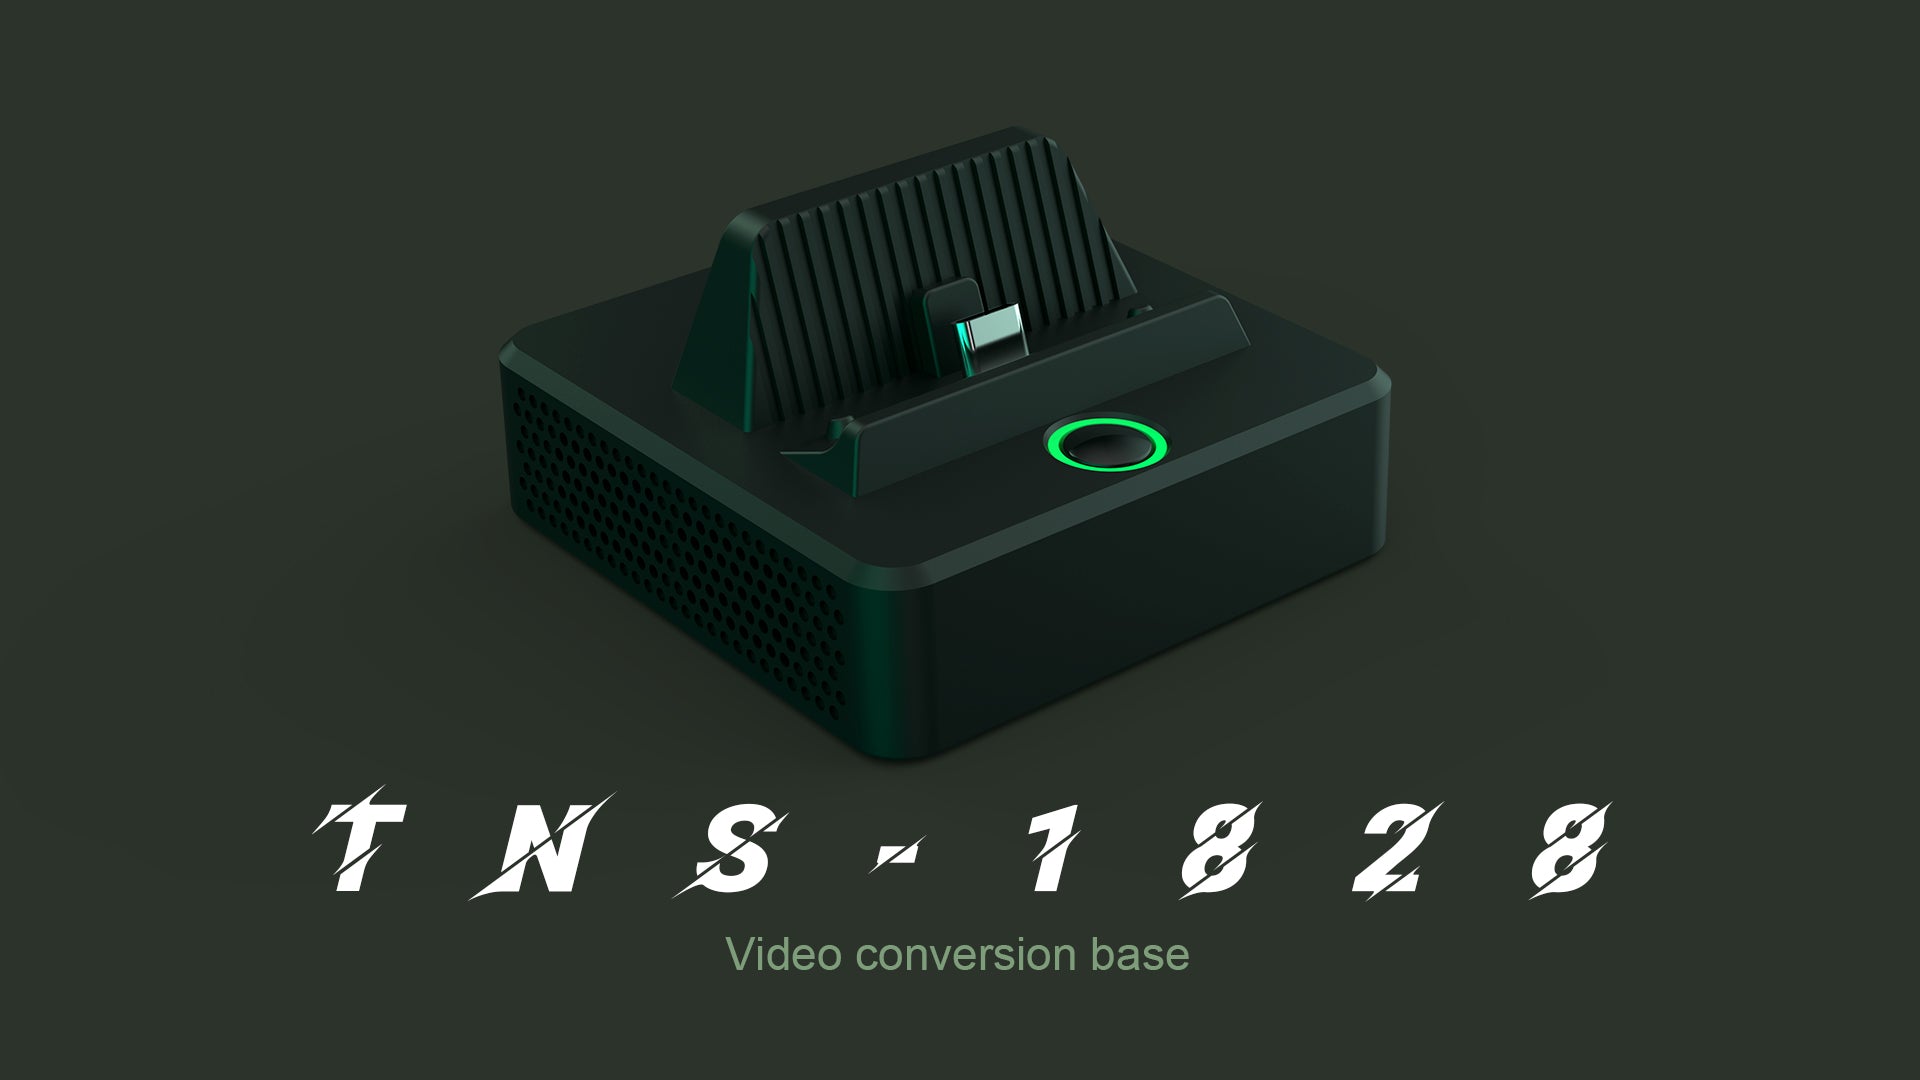 Pojifi-TNS-1828-video conversion base